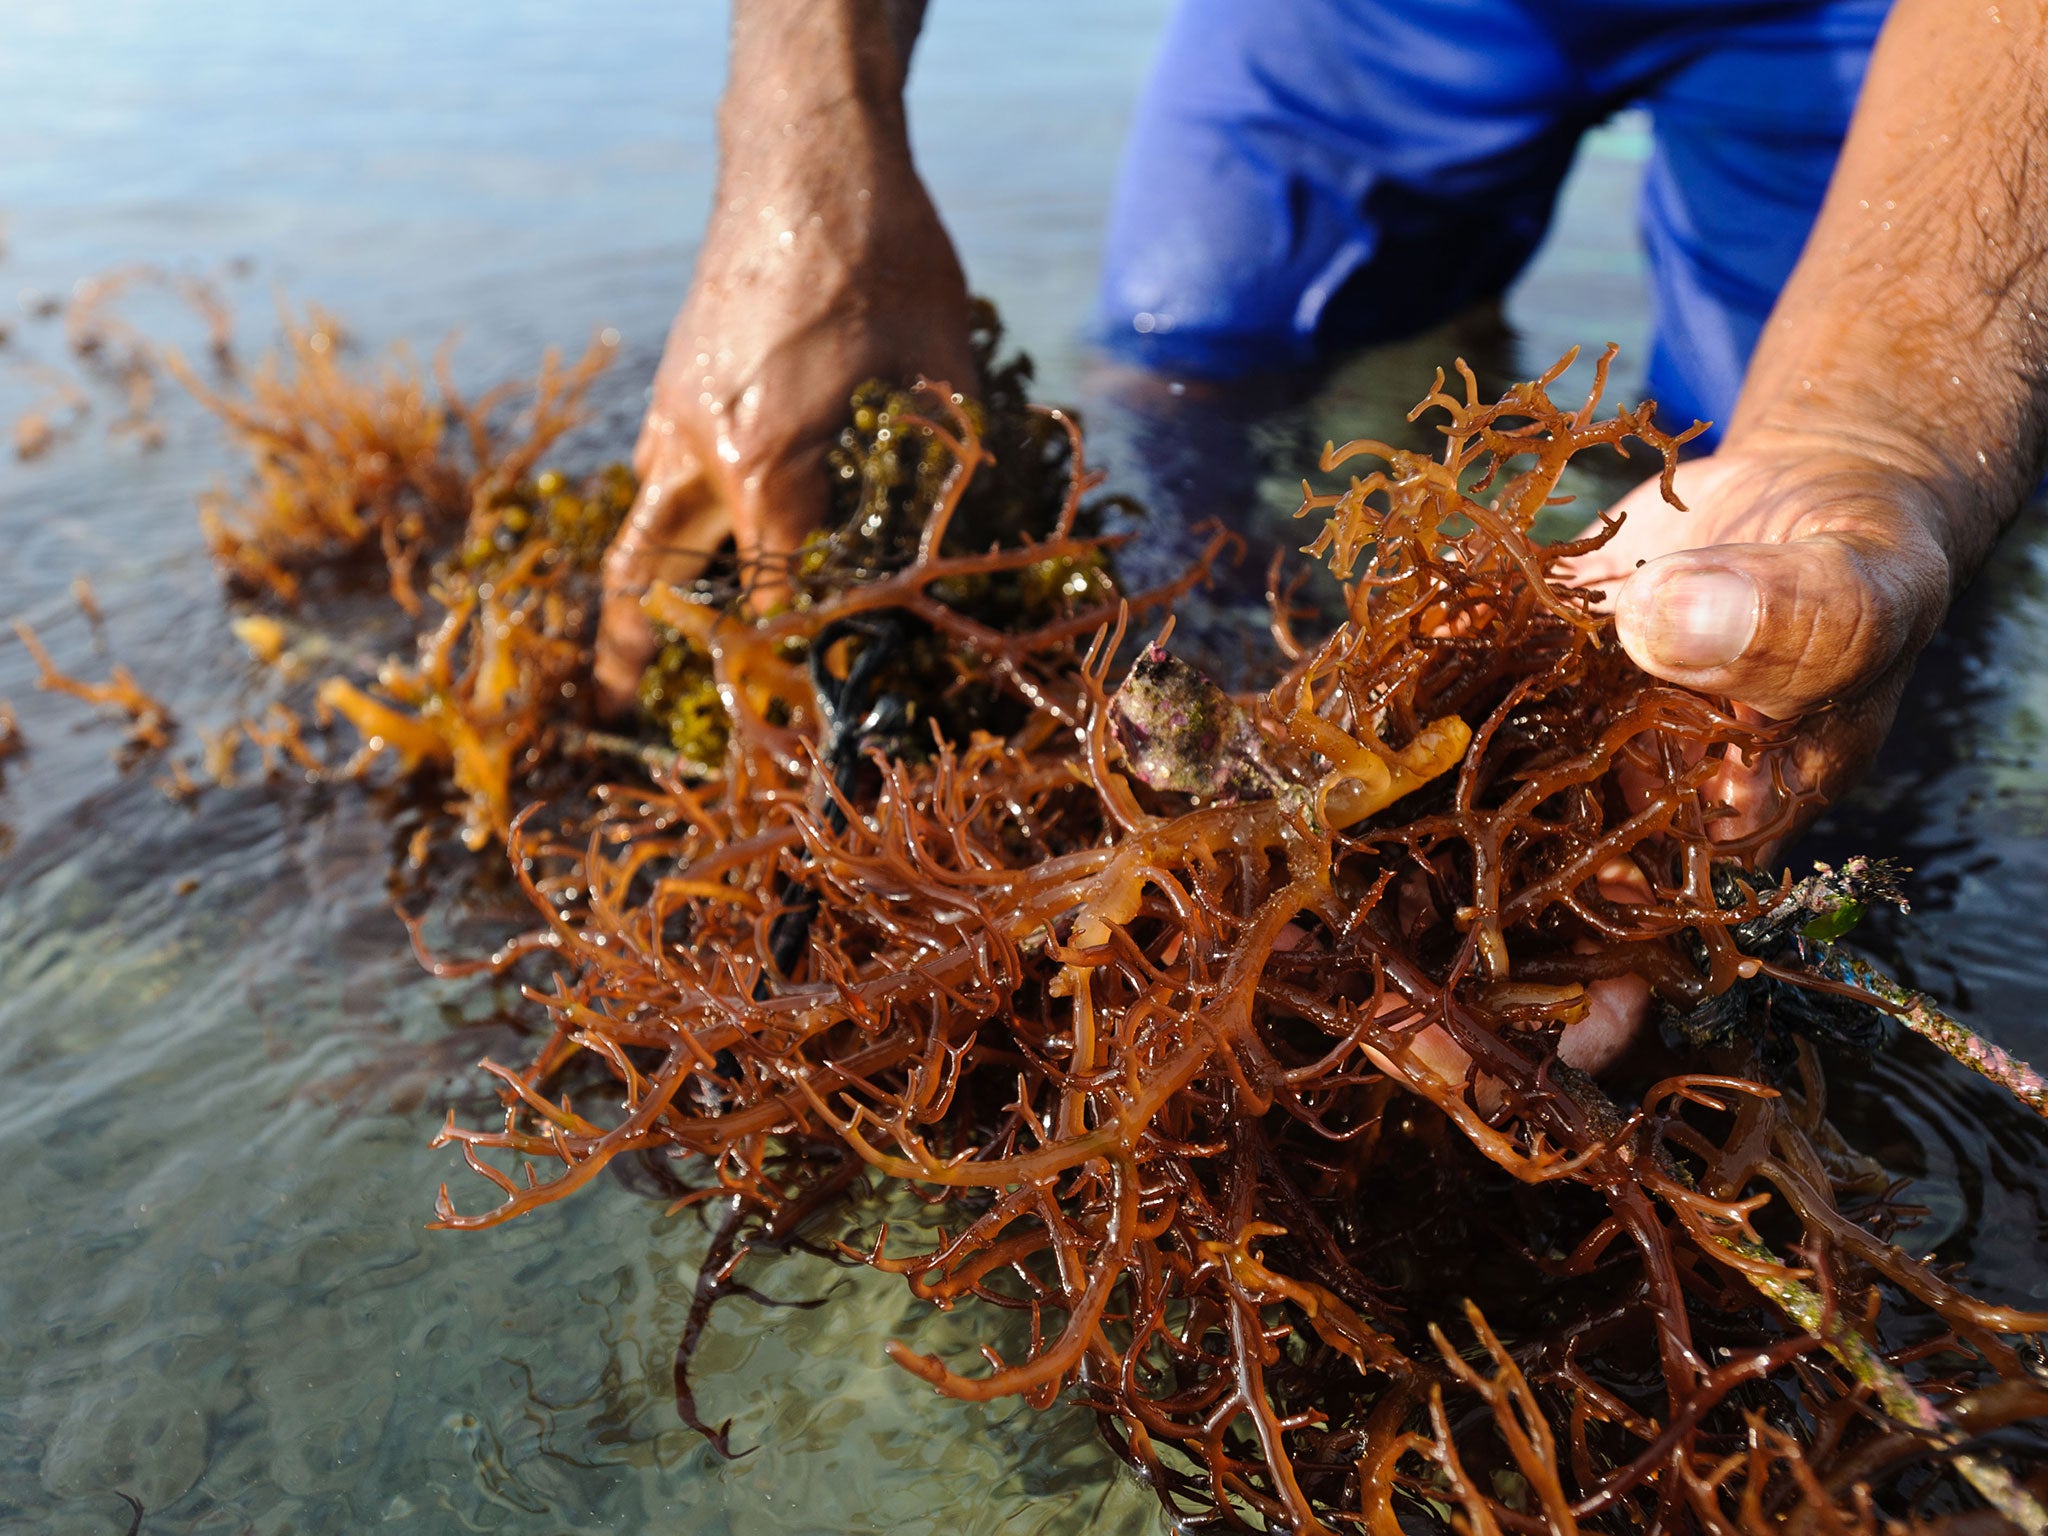 Harvesting seaweed in Indonesia